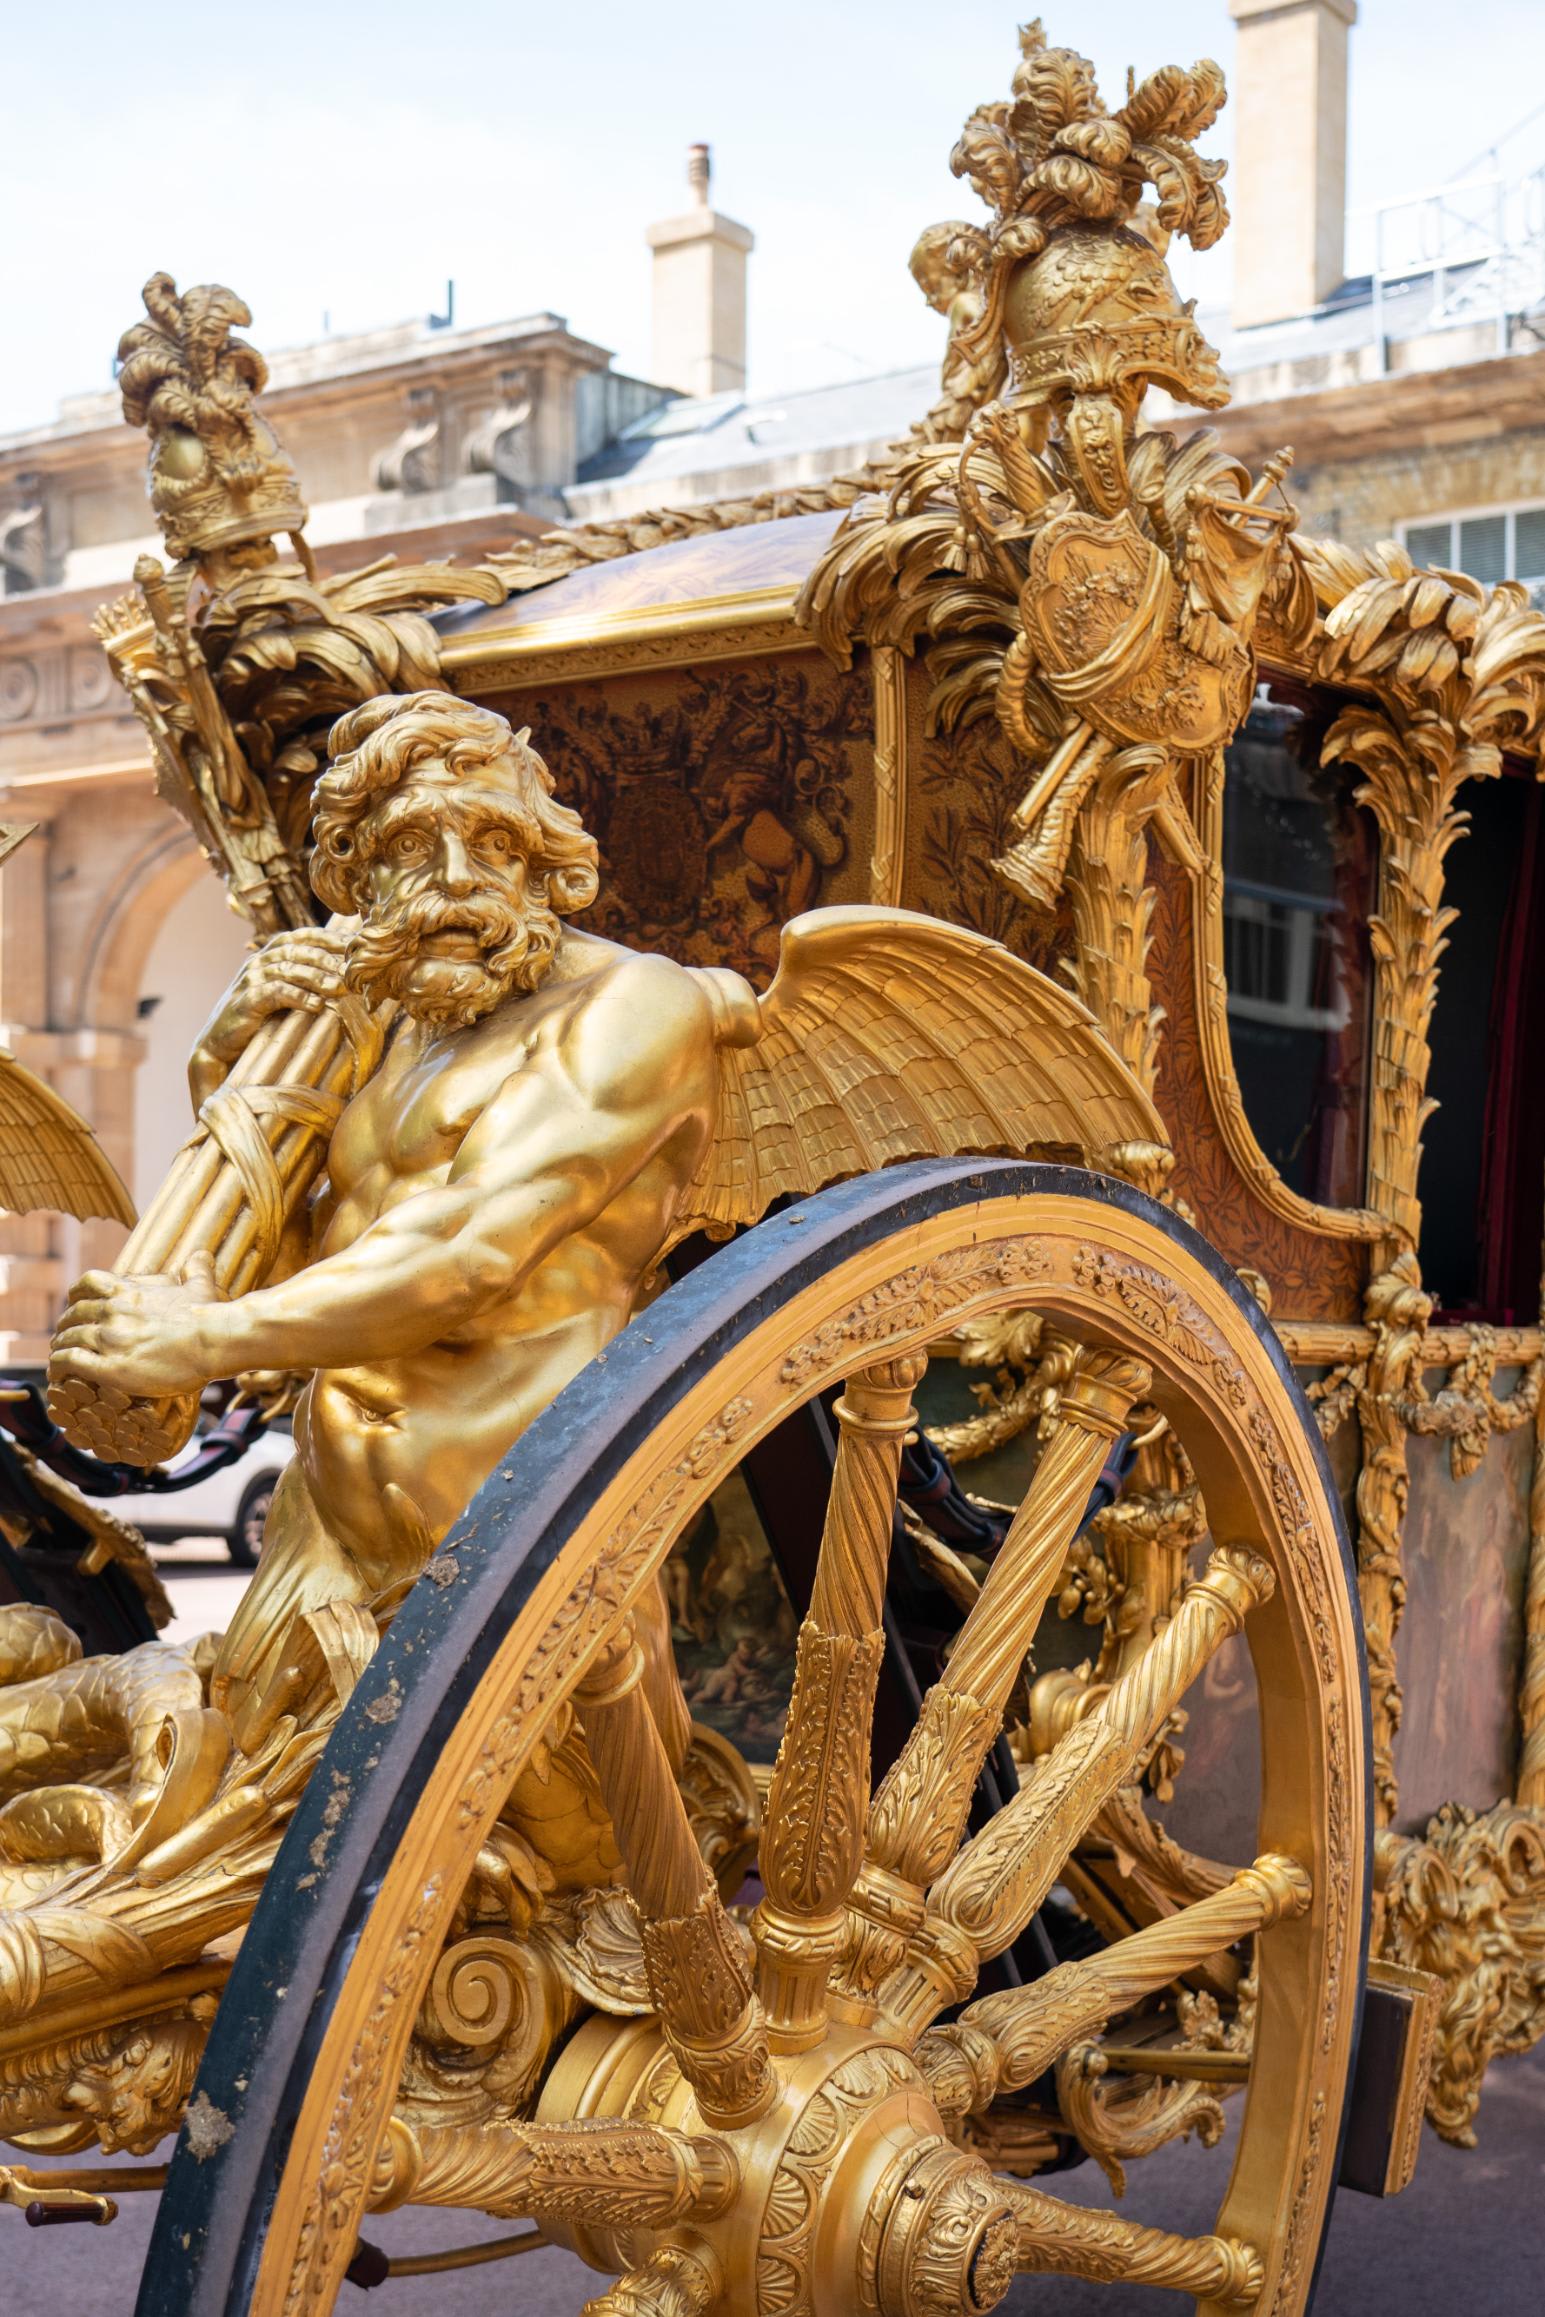 كأنها خرجت من قصة خيالية.. مركبة الملكة إليزابيث الذهبية تظهر في احتفالات اليوبيل البلاتيني 